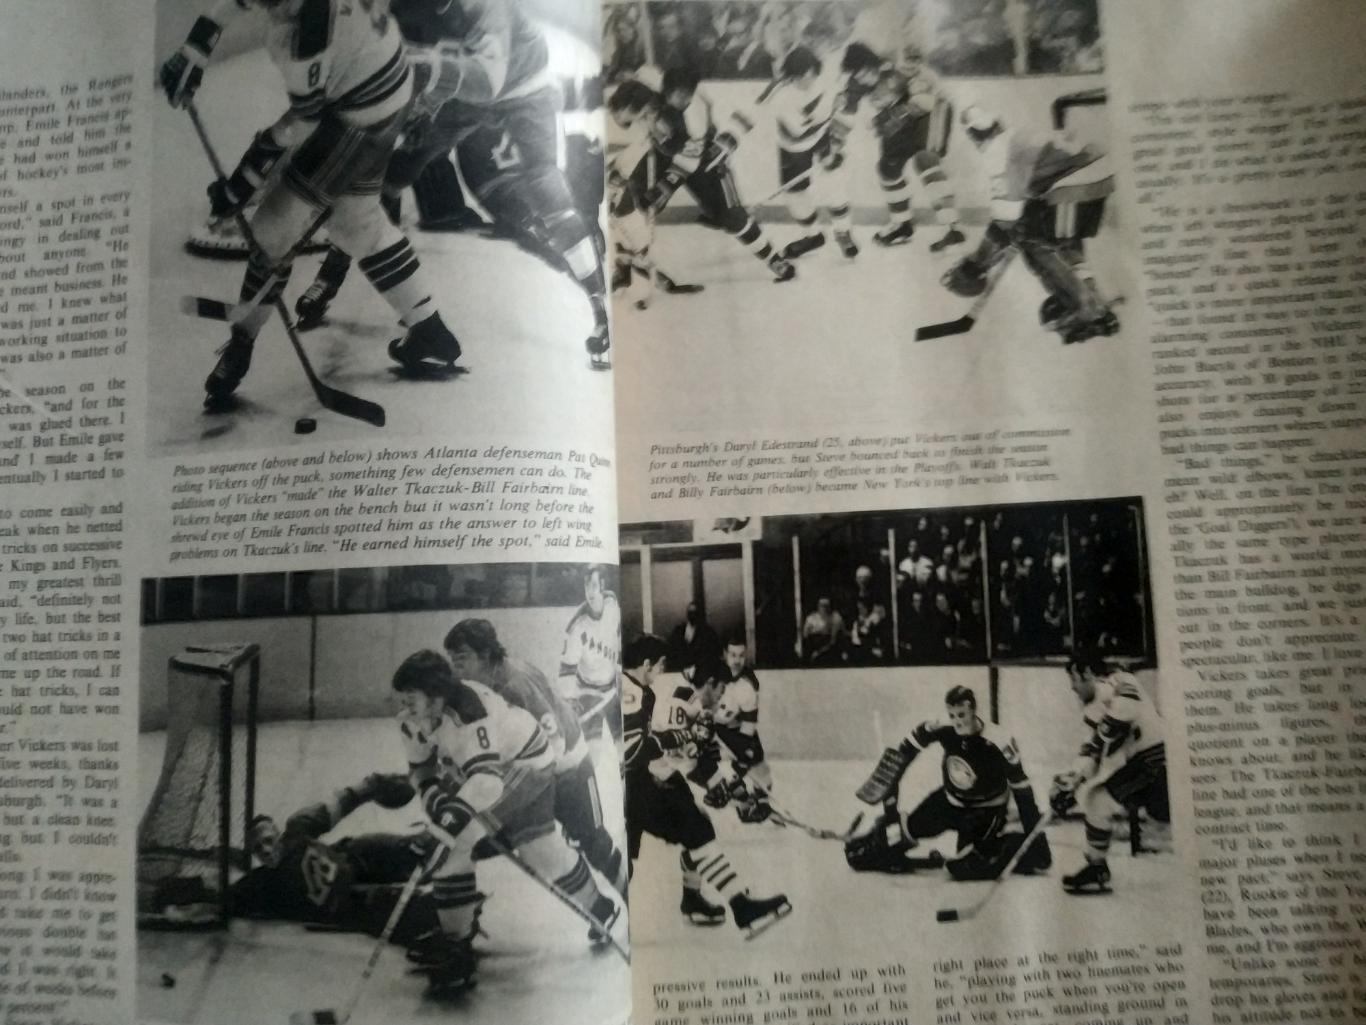 ЖУРНАЛ СПРАВОЧНИК НХЛ СПОРТ БЕН СТРОНГ ХОКЕЕЙ NOV 1973 NHL BEN STRONG HOCKEY 4